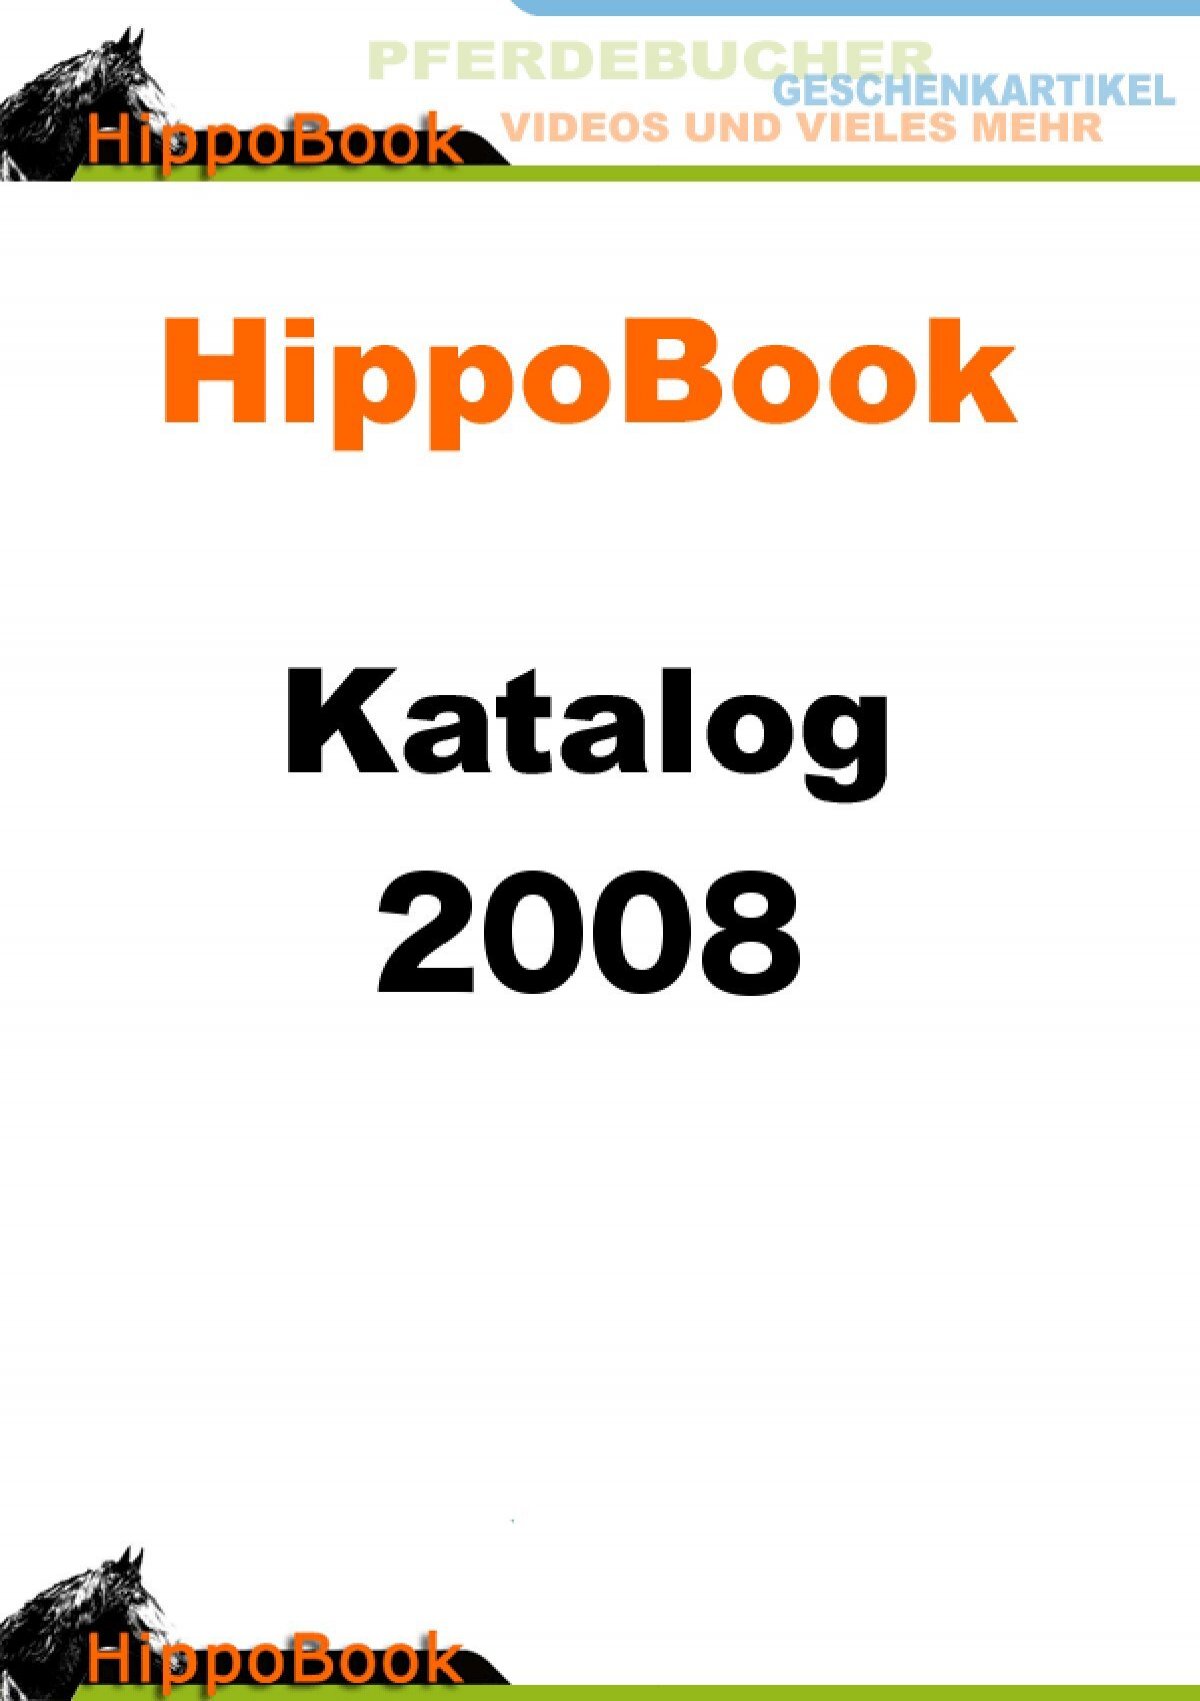 Laden Sie hier den HippoBook- Gesamtkatalog herunter (34.33